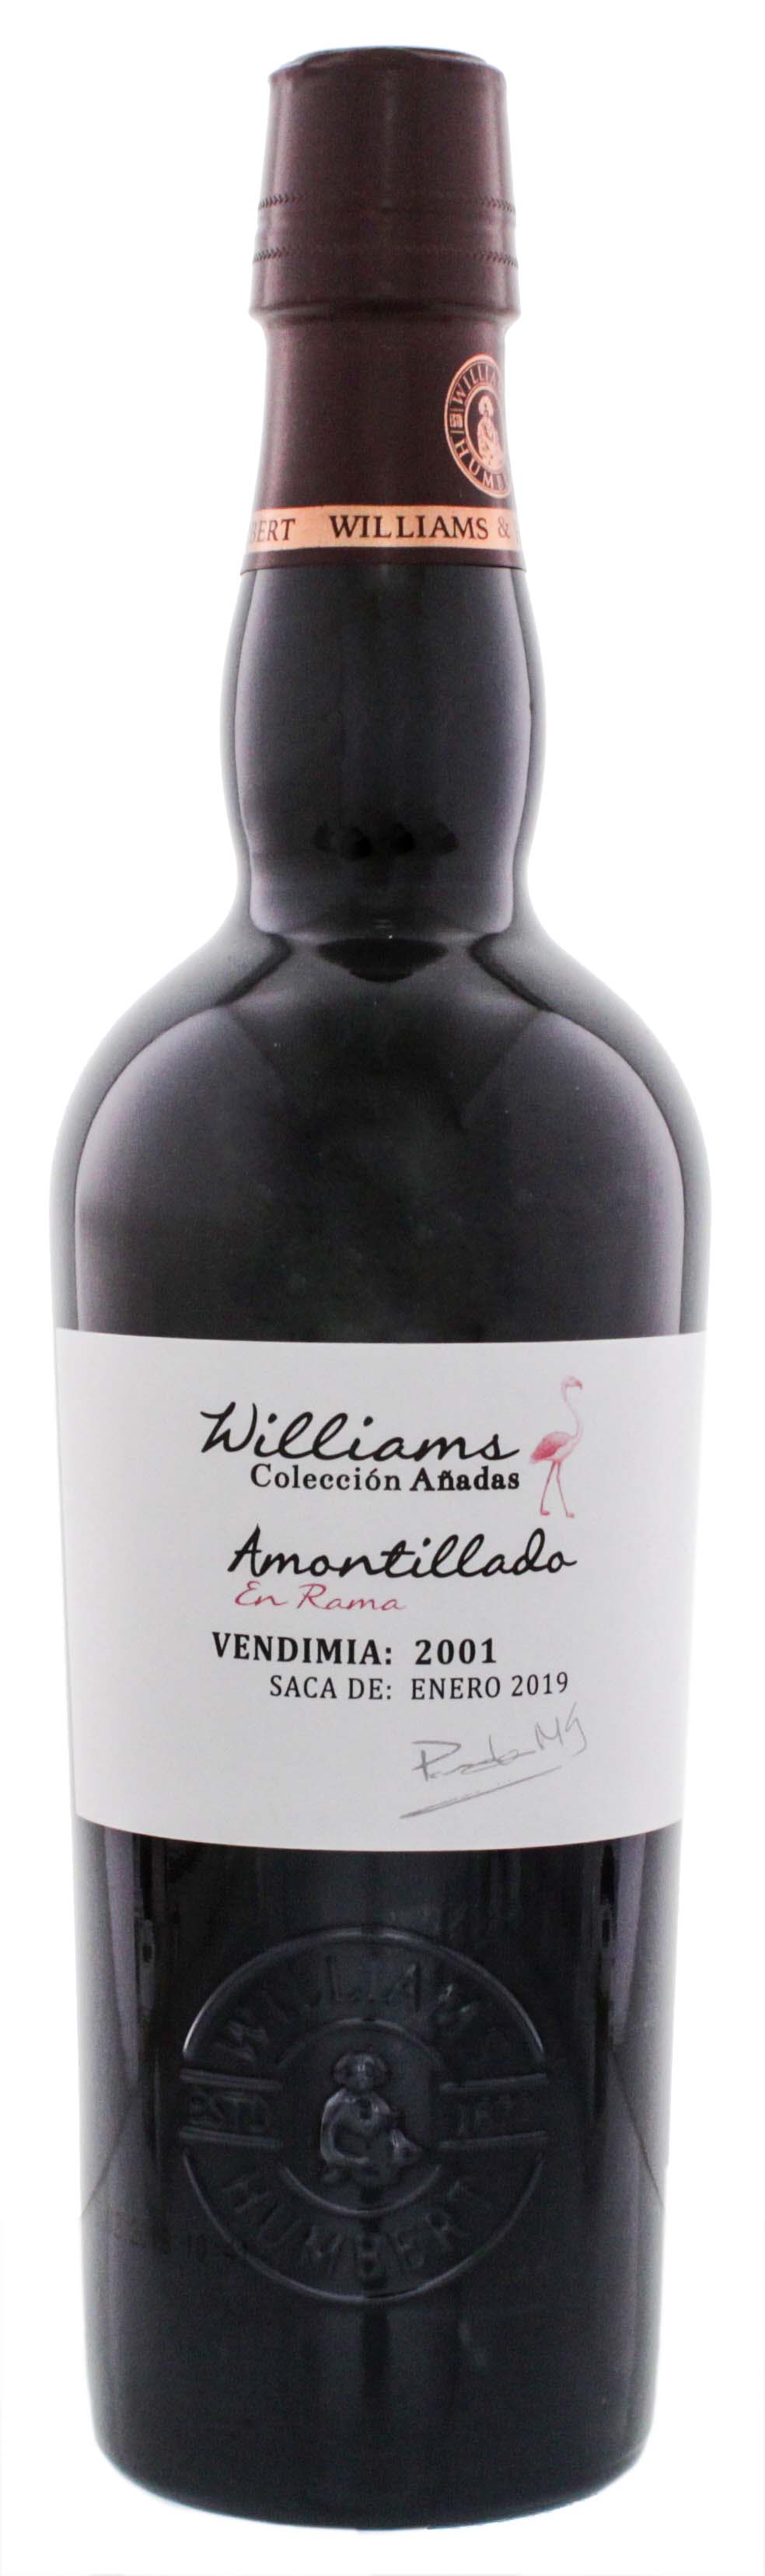 Williams Coleccion Anadas Amontillado En Rama 2001 Sherry 0,5L